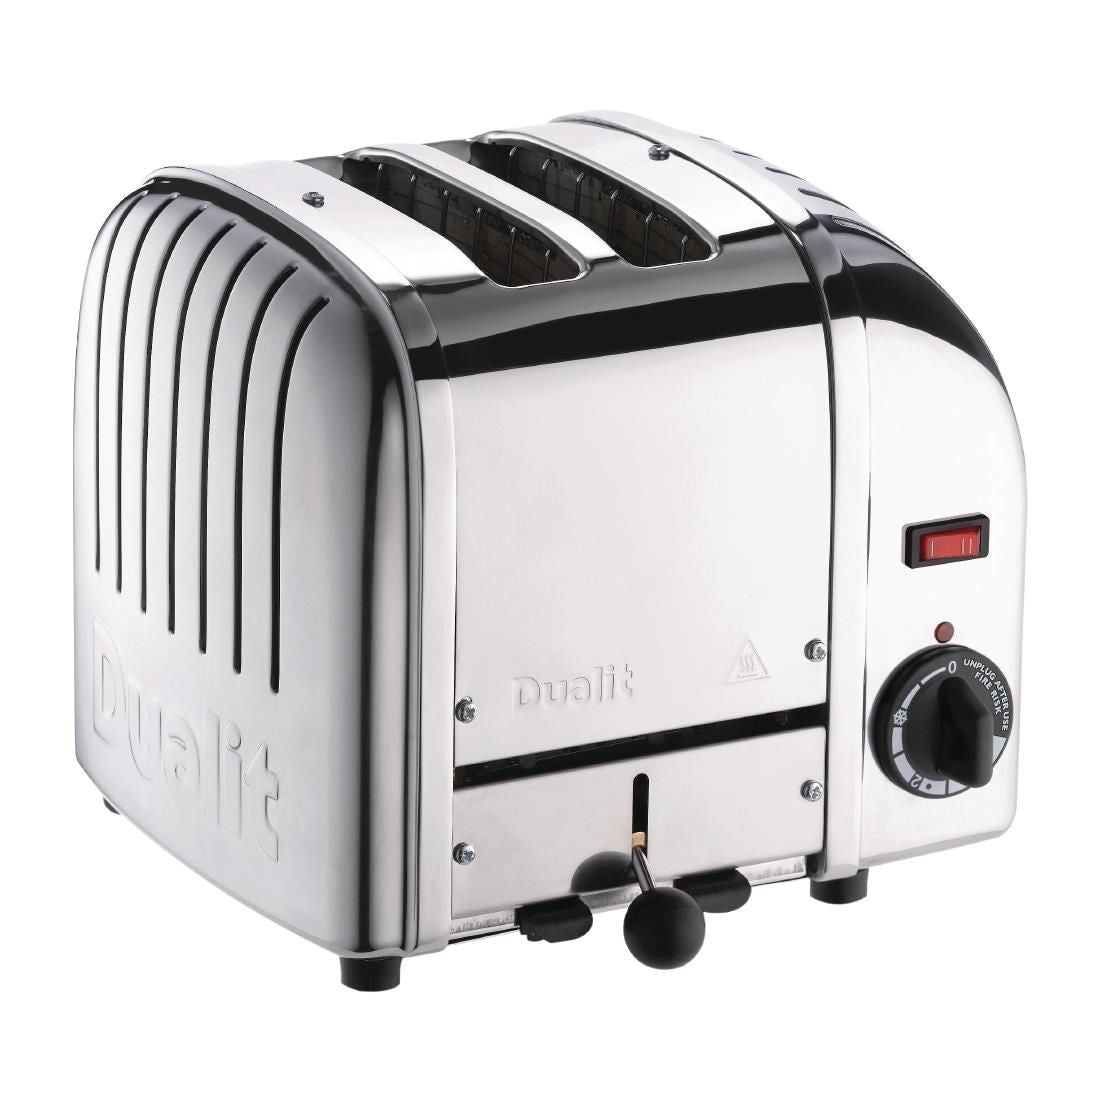 Dualit 2 Slice Vario Toaster Stainless Steel 20245 - F208